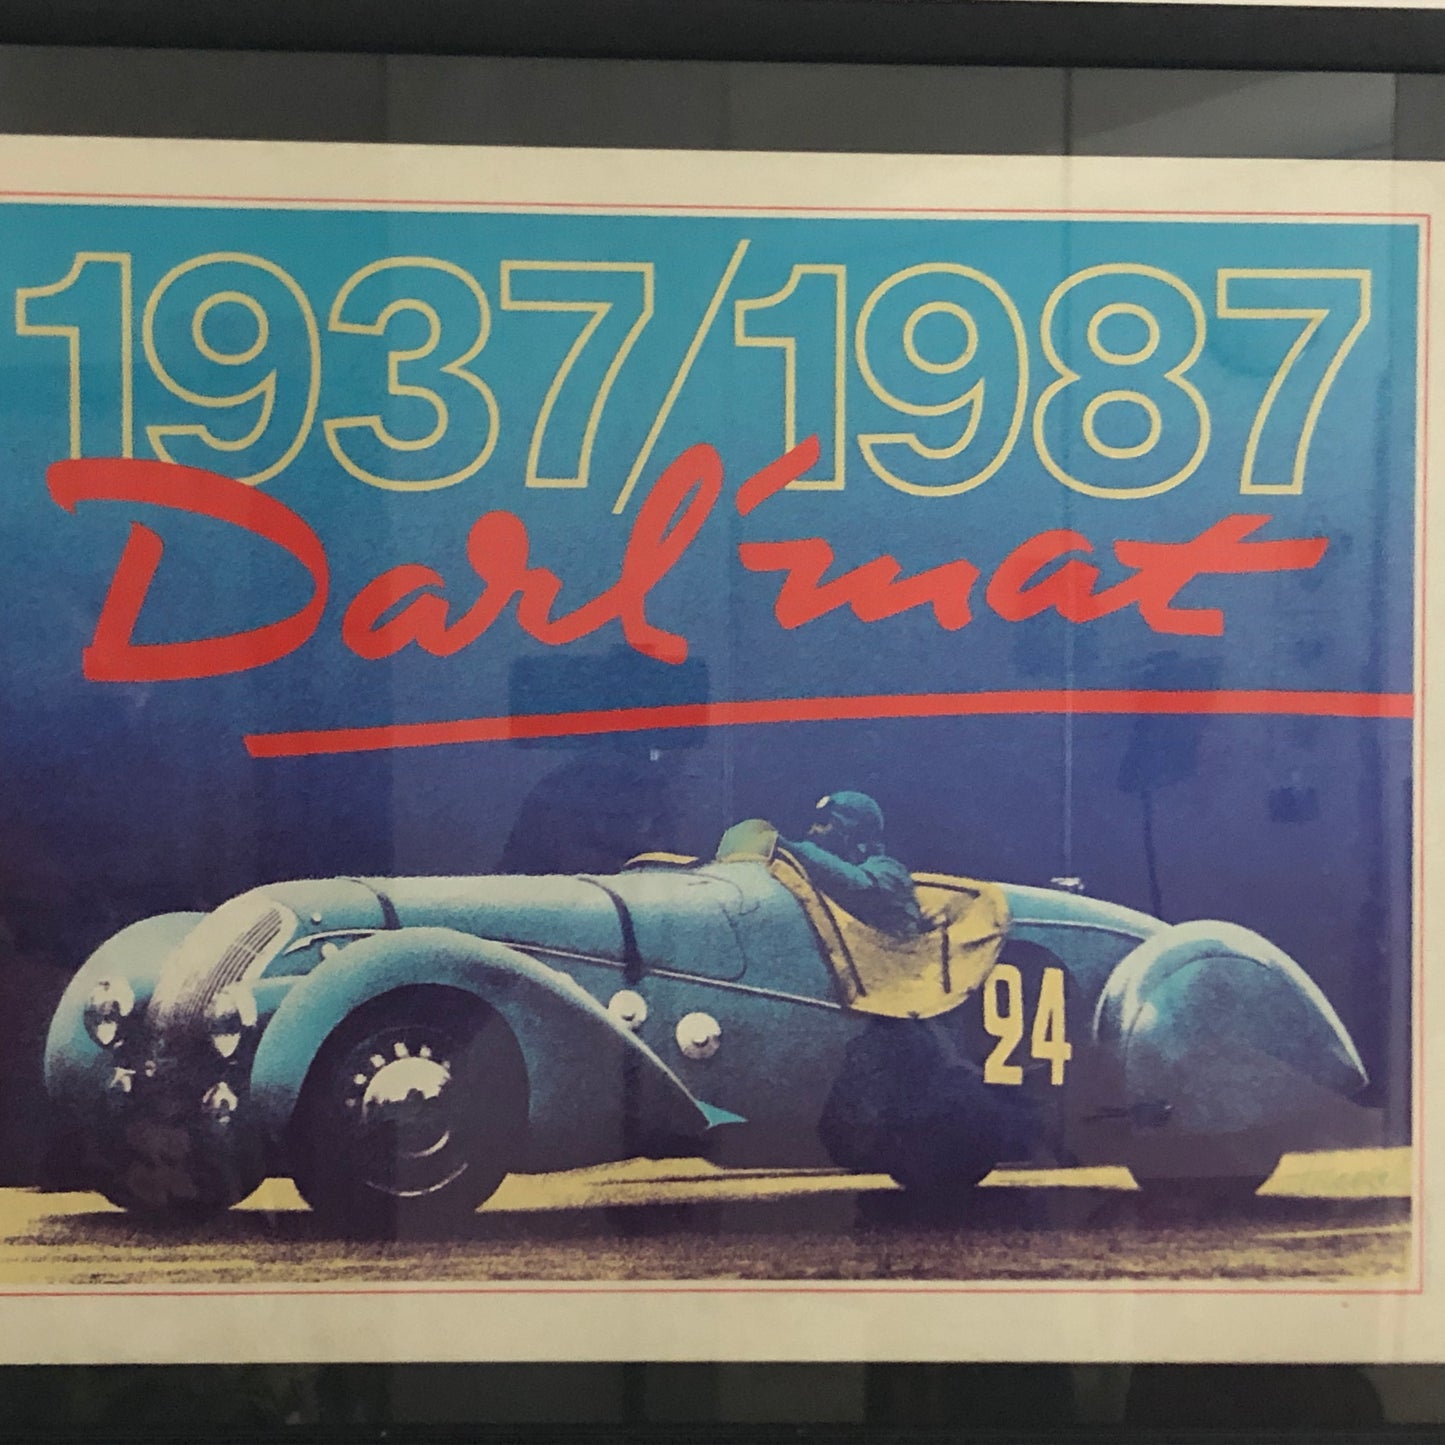 Peugeot Poster 1937/1987 Darl'mat